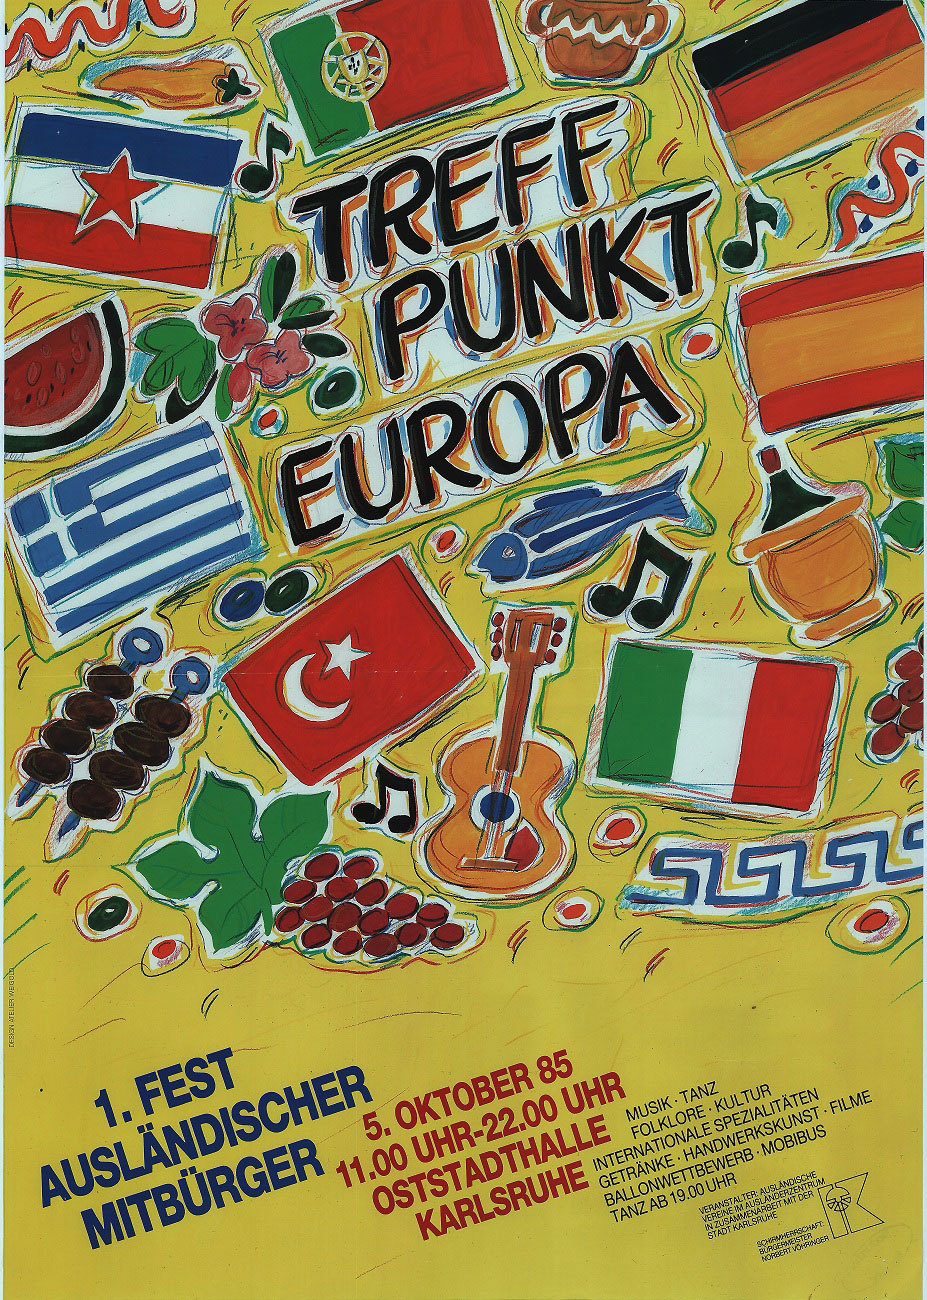 Erstes Fest ausländischer Mitbürger, 1985